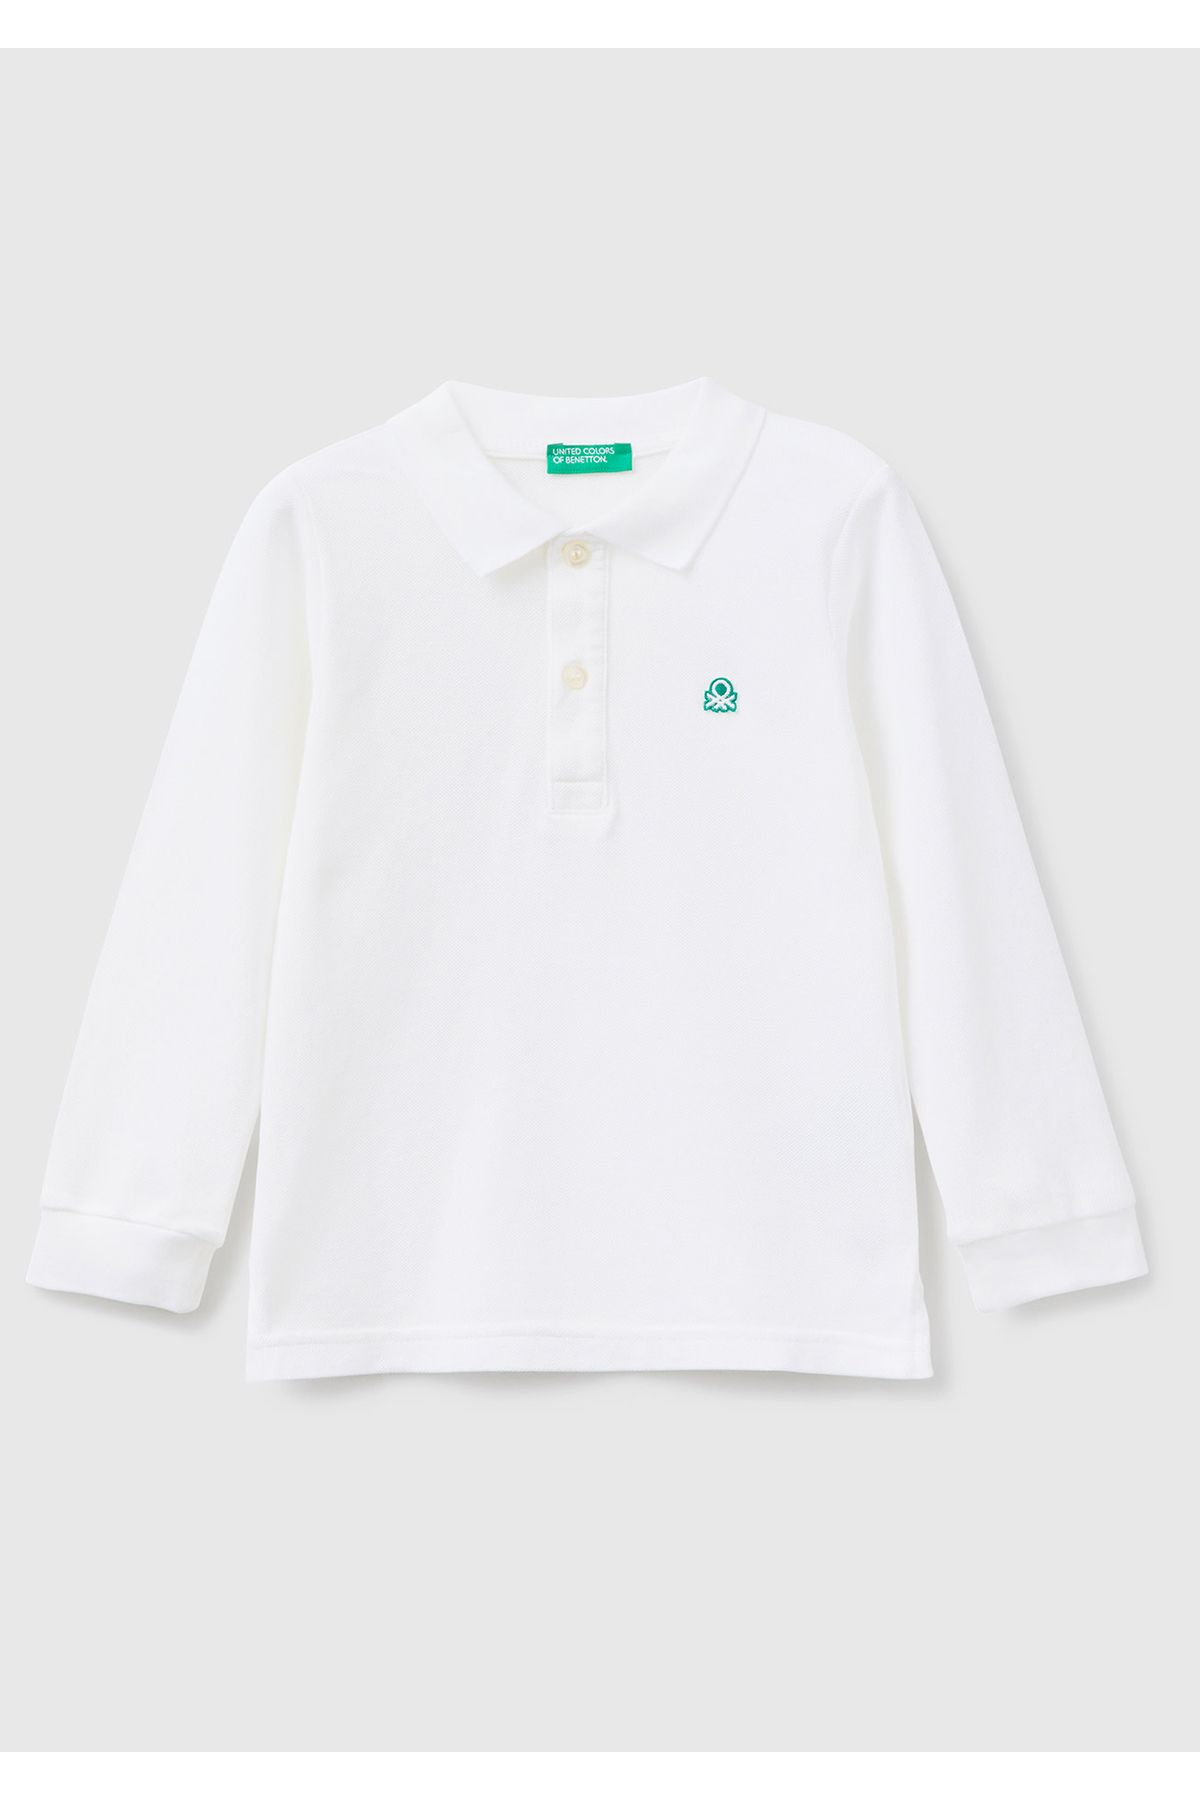 United Colors of Benetton Erkek Çocuk Beyaz Logolu Polo T-Shirt